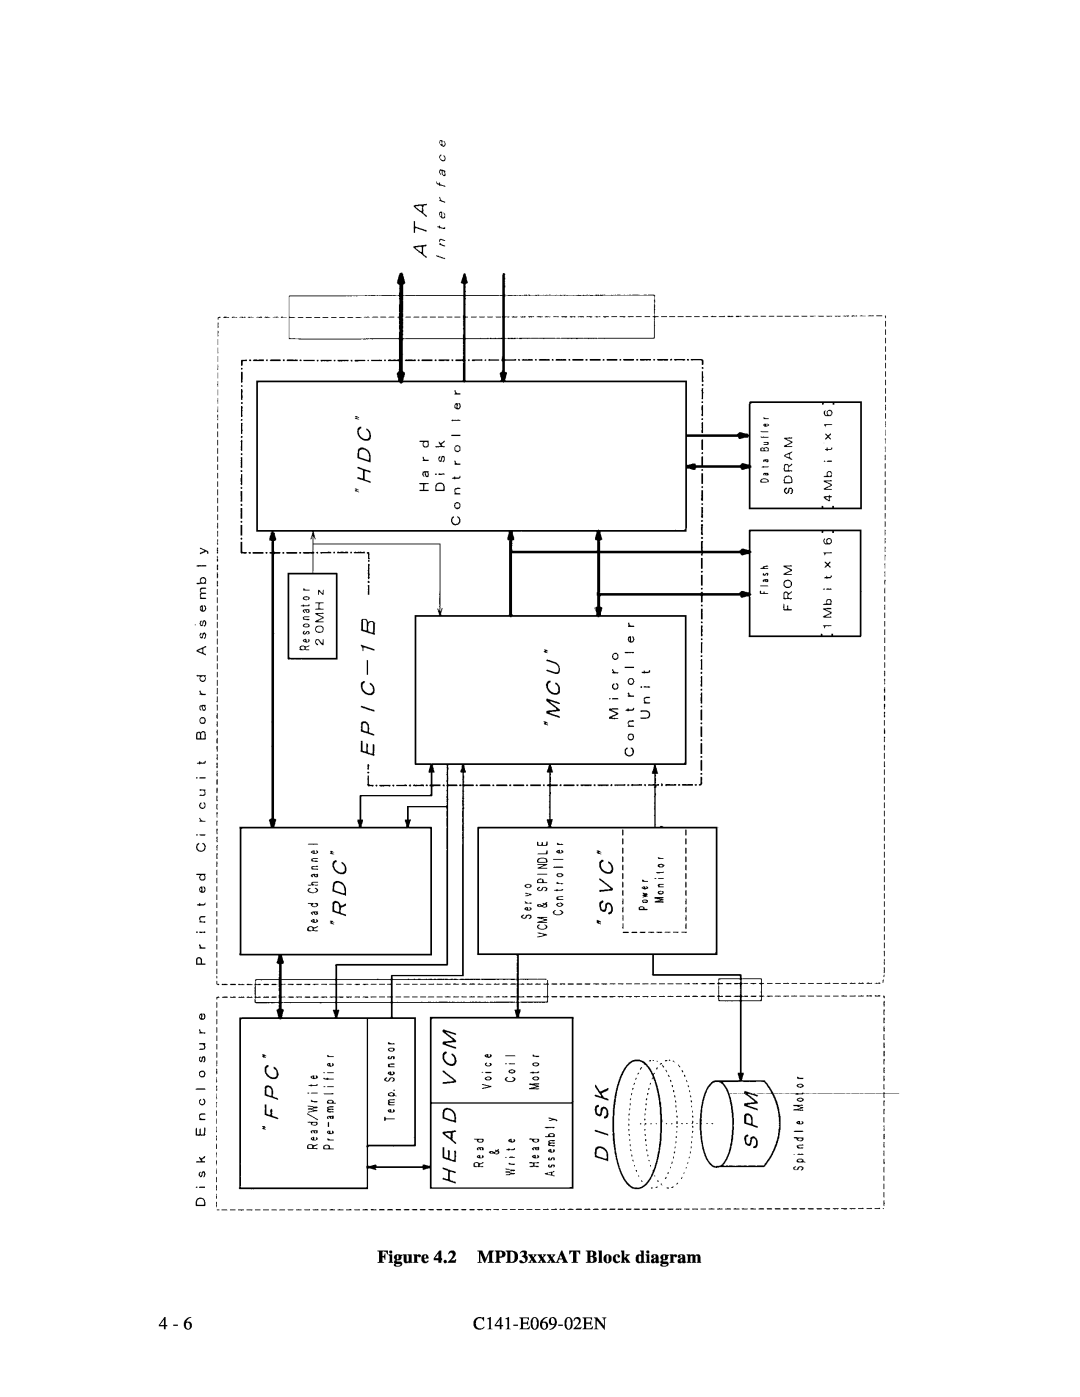 Fujitsu MPD3XXXAT manual 2 MPD3xxxAT Block diagram, C141-E069-02EN 